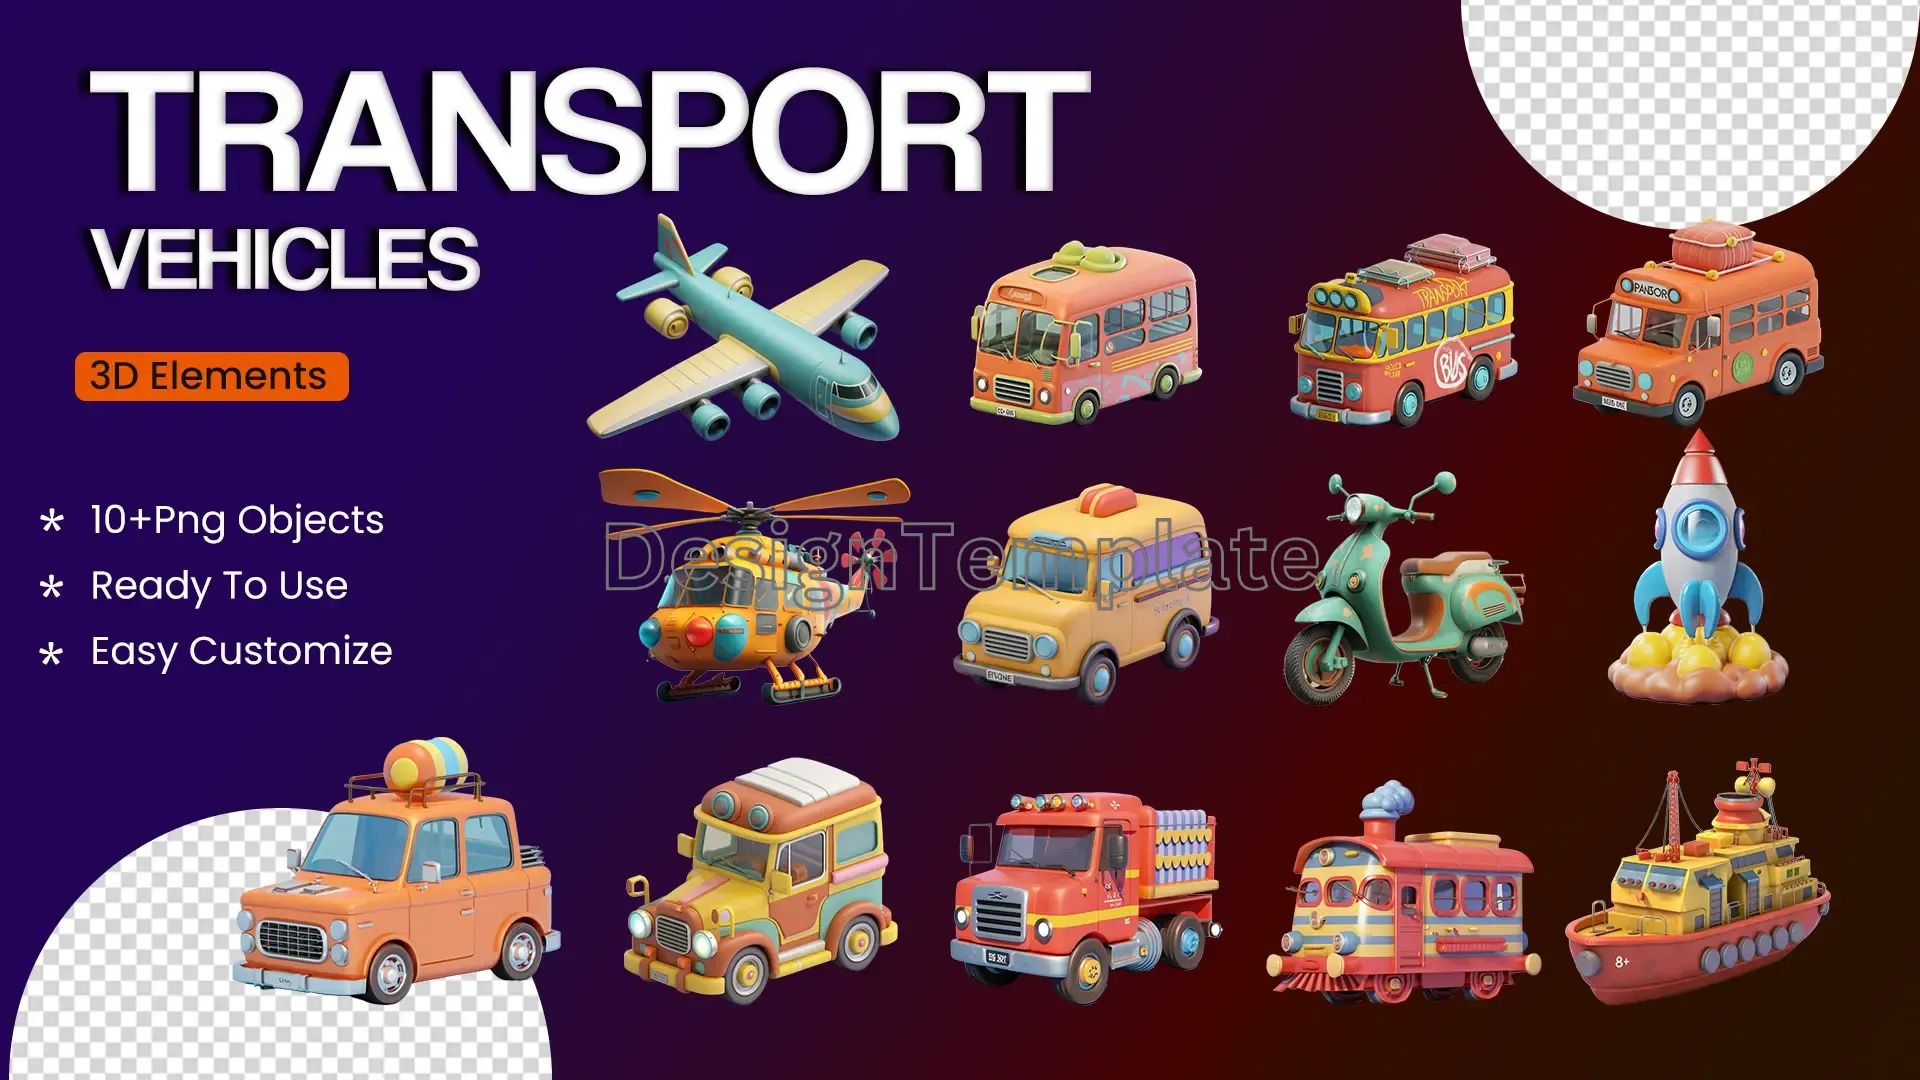 Comprehensive Transport Vehicles 3D Icons Mega Pack image